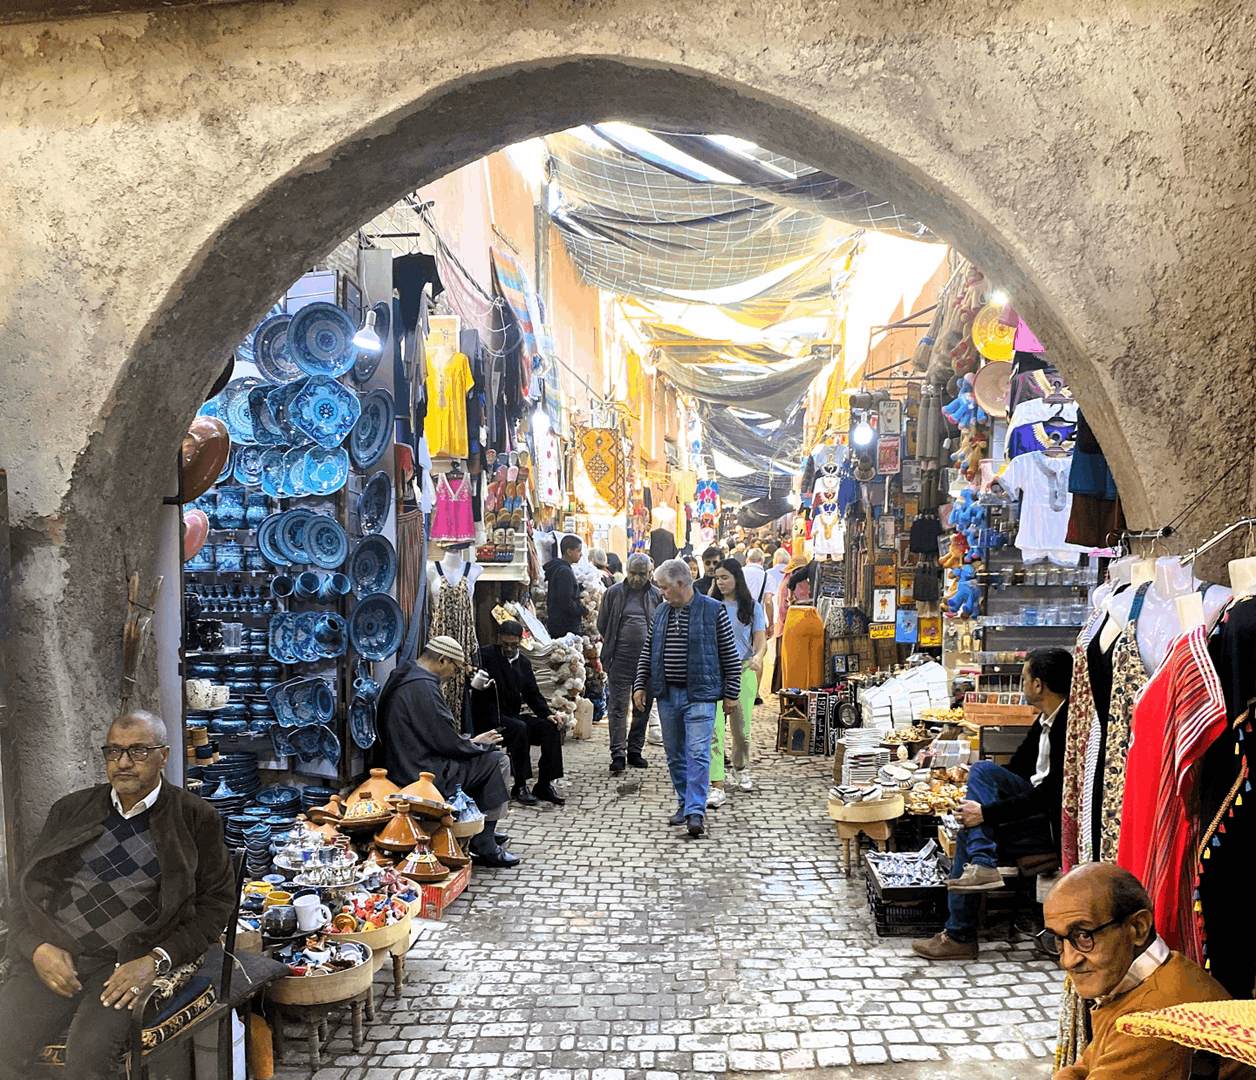 ¡Bienvenidos a Marrakech!